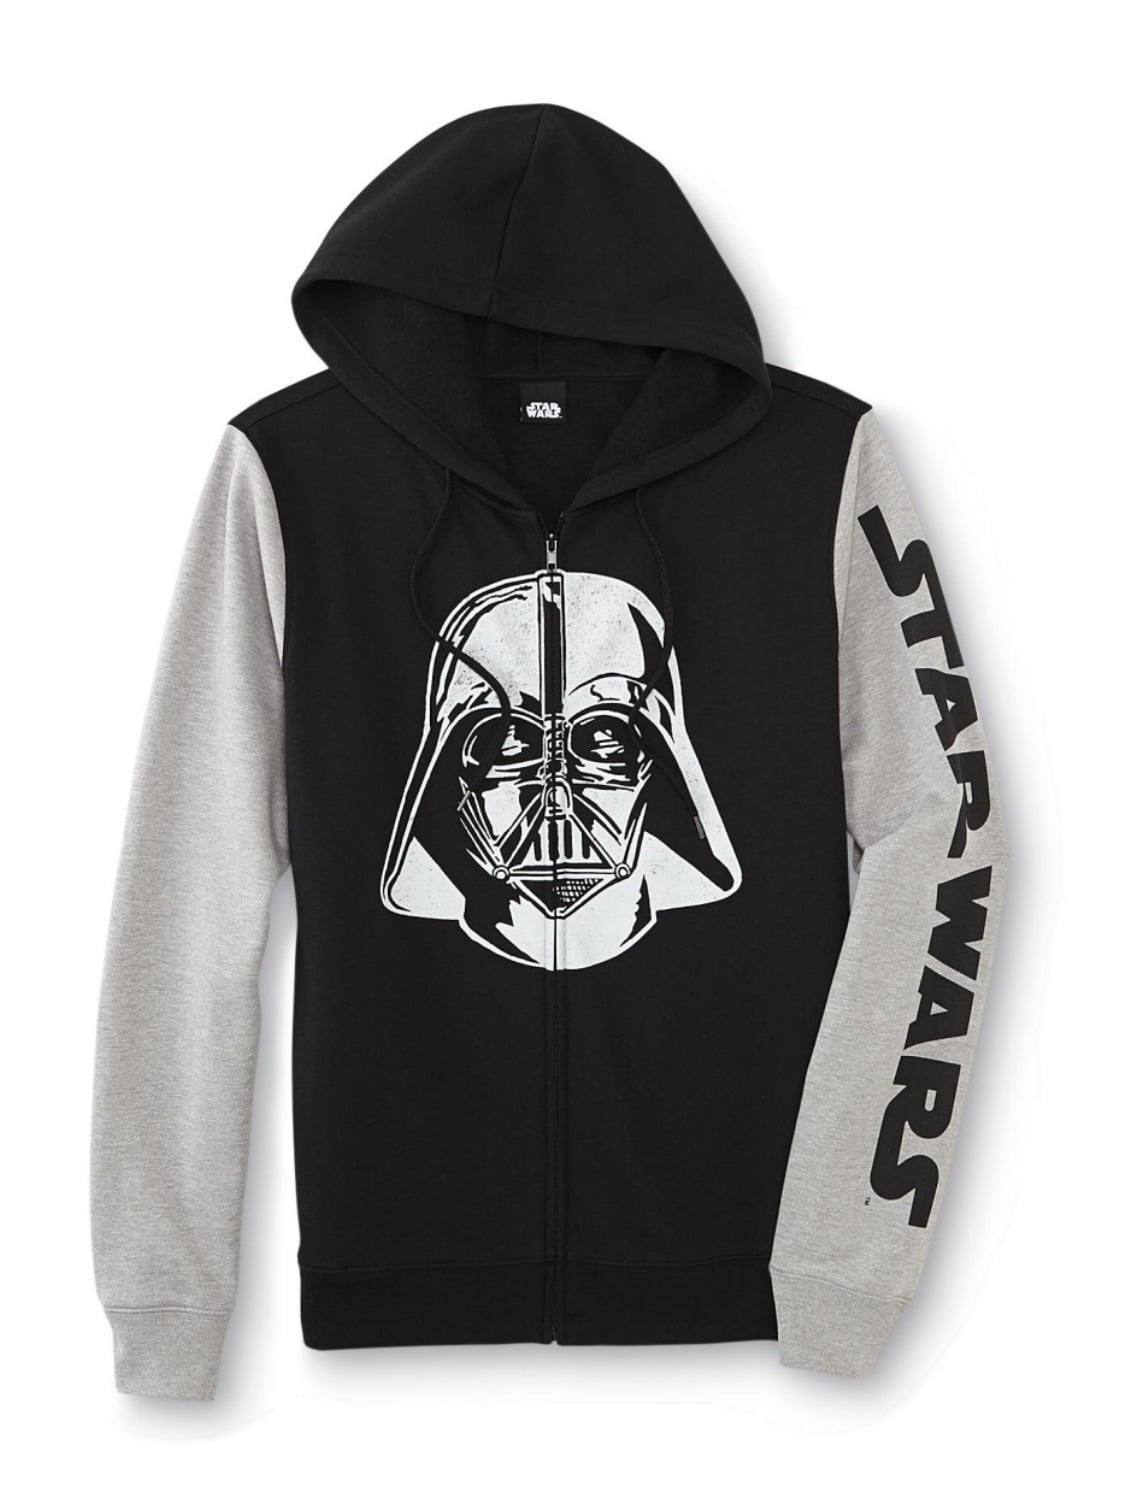 Star Wars Full Zip Hoodie for Boys Darth Vader Hooded Sweatshirt 2 Side Pockets 